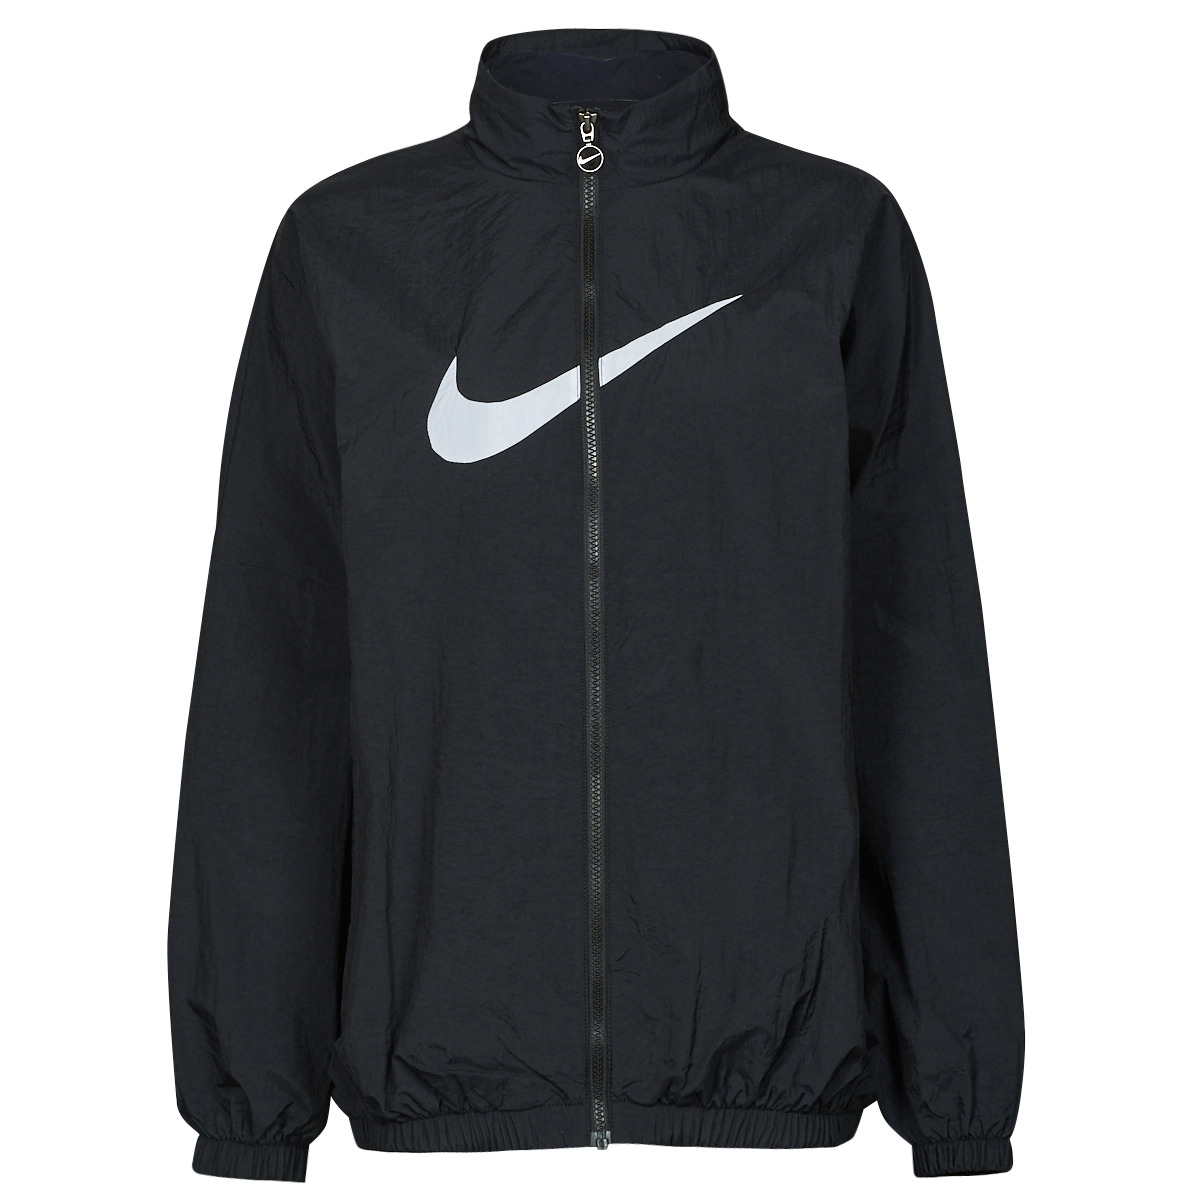 Nike Woven Jacket Preto / Branco - Entrega gratuita